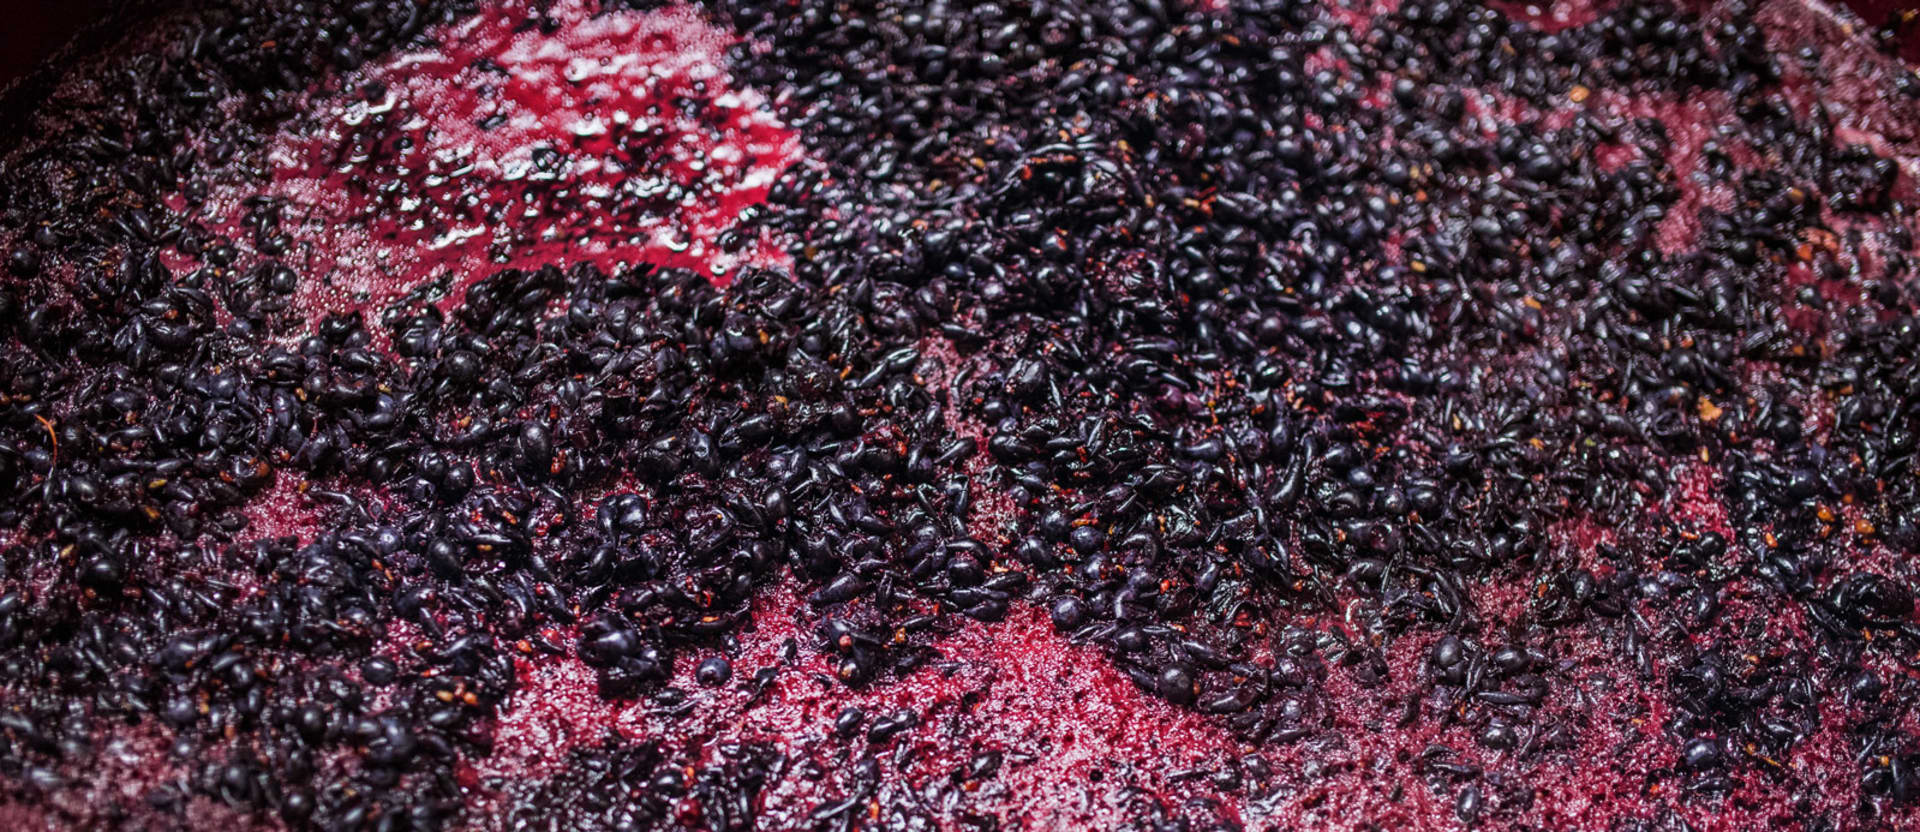 attrezzature vino per la fermentazione alcolica, macerazione, dosaggio di coadiuvanti enologici